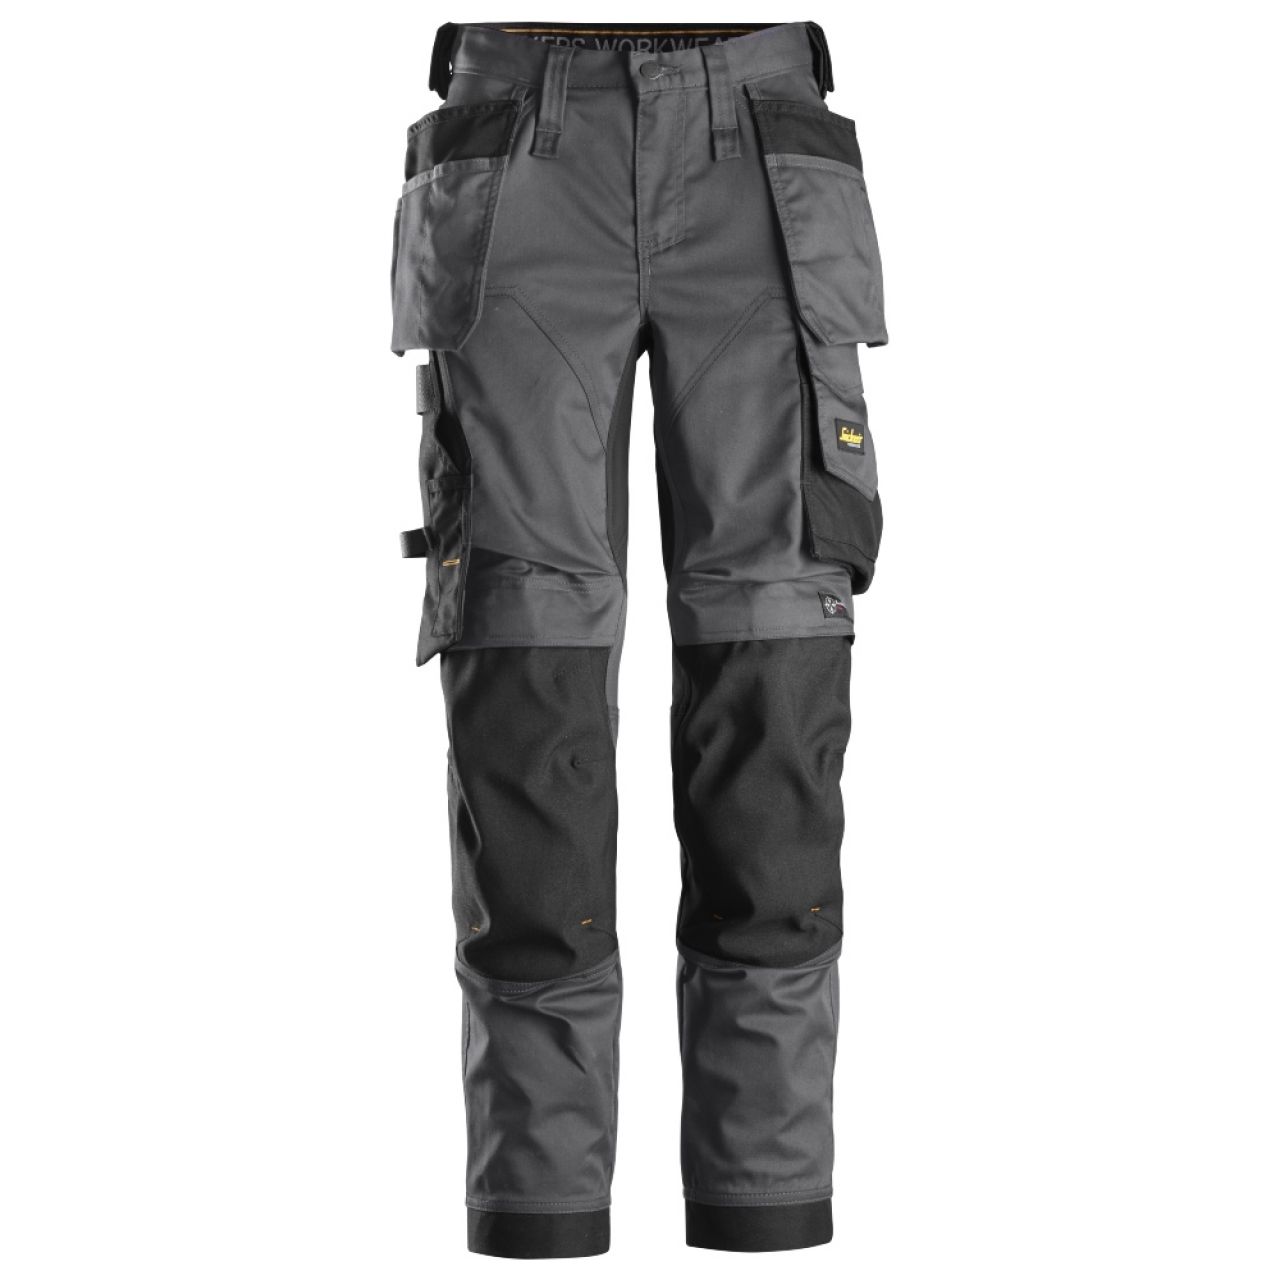 6247 Pantalones largos de trabajo elásticos para mujer con bolsillos flotantes AllroundWork gris acero-negro talla 38